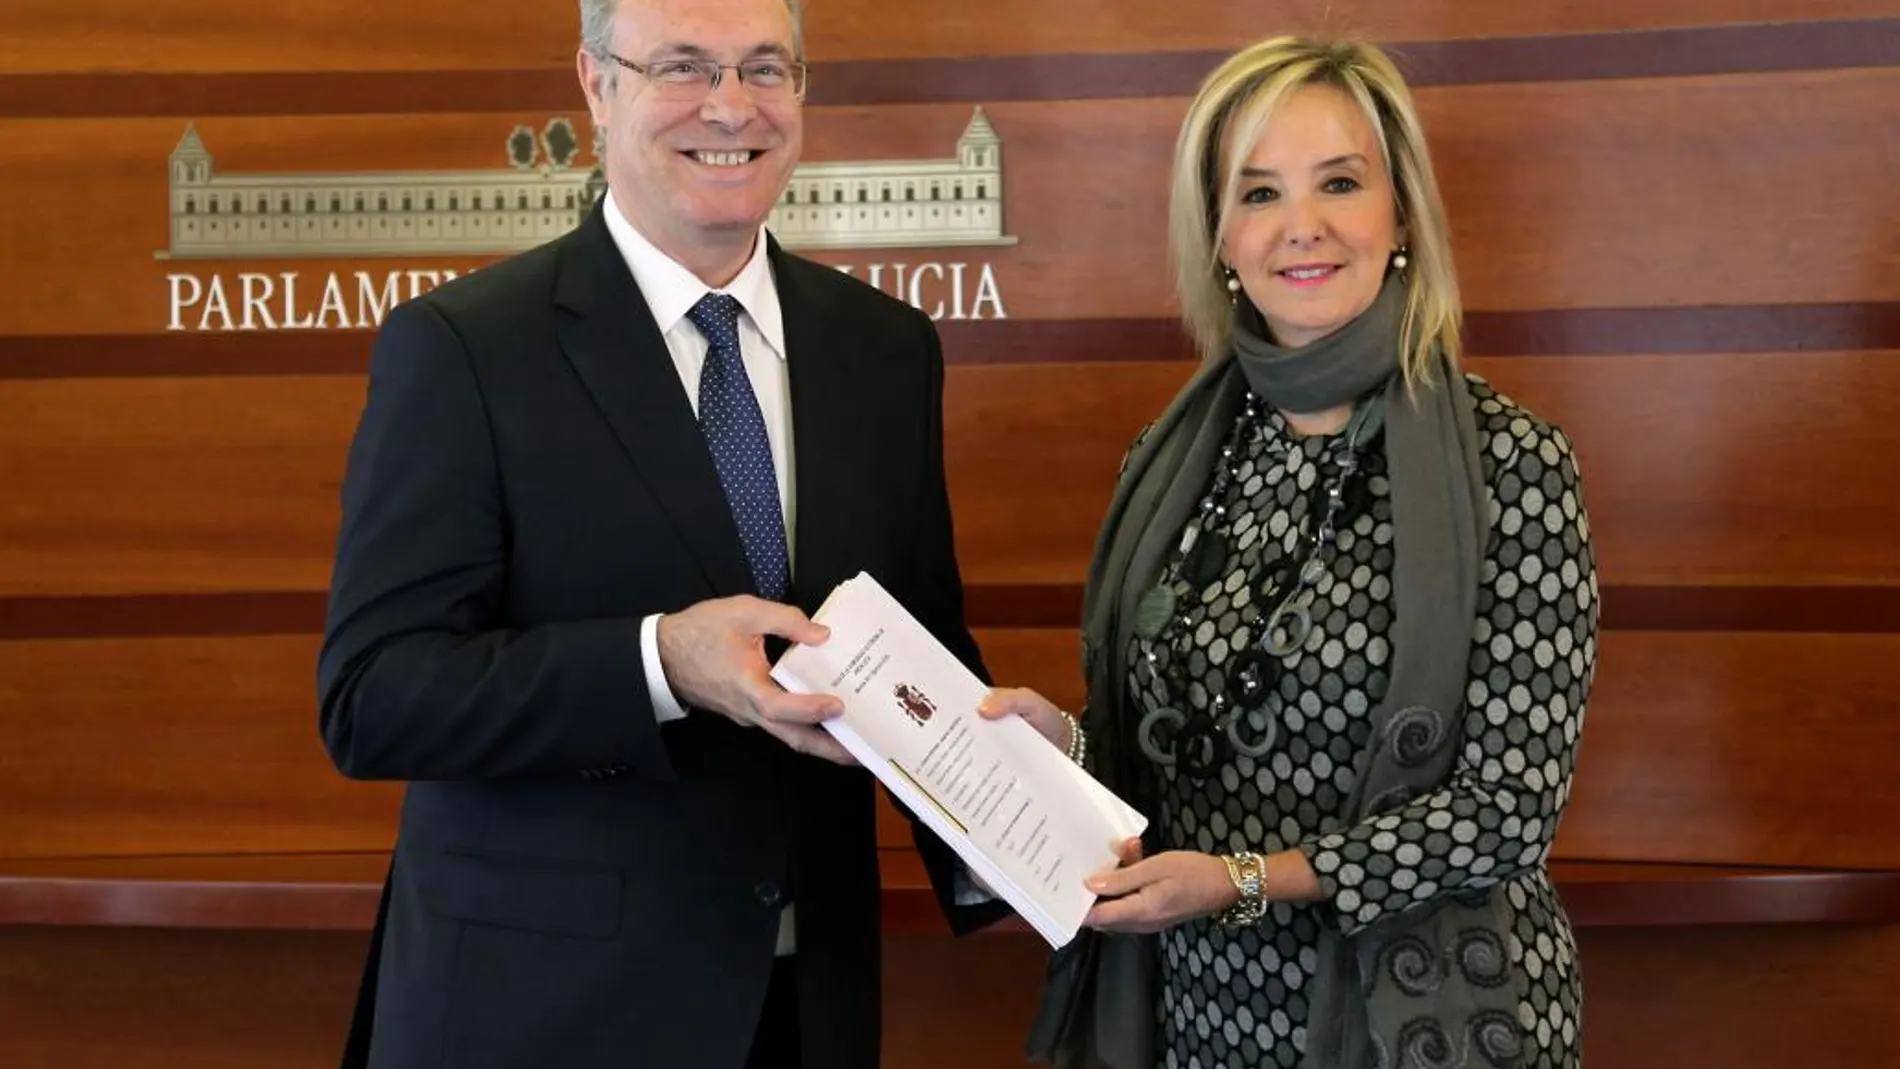 El presidente del Parlamento, Juan Pablo Durán, recibe la Memoria Anual de la Fiscalía Superior de Andalucía de manos de su nueva titular, Ana Tárrago